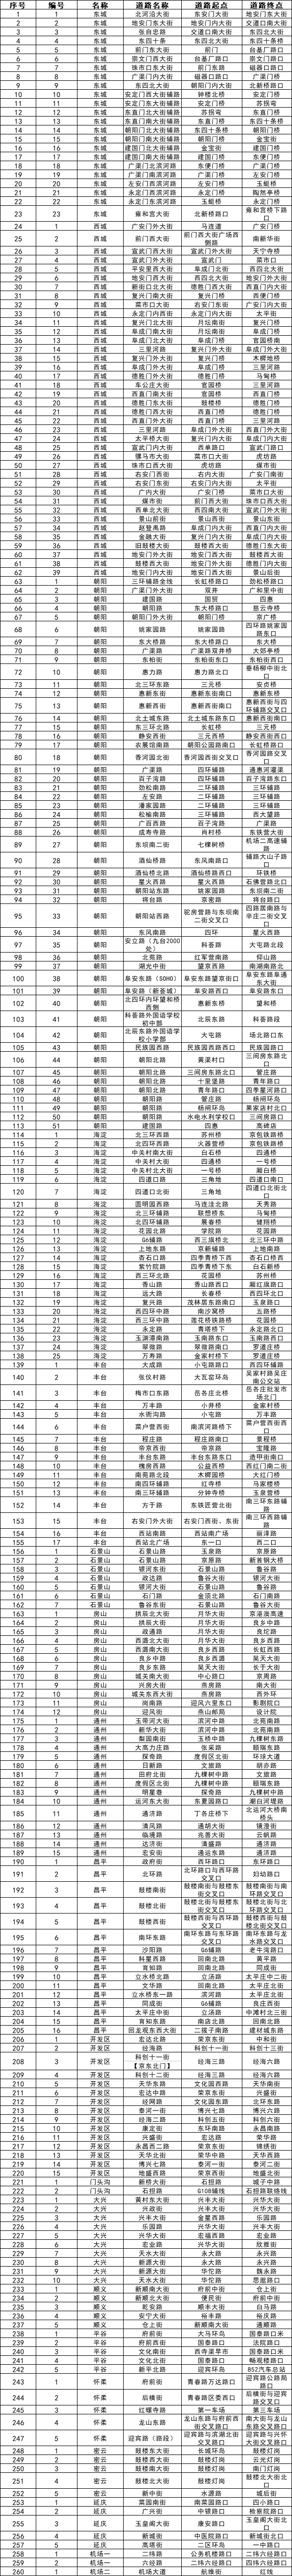 北京对260条路段机动车违法停车从严管理！名单公布